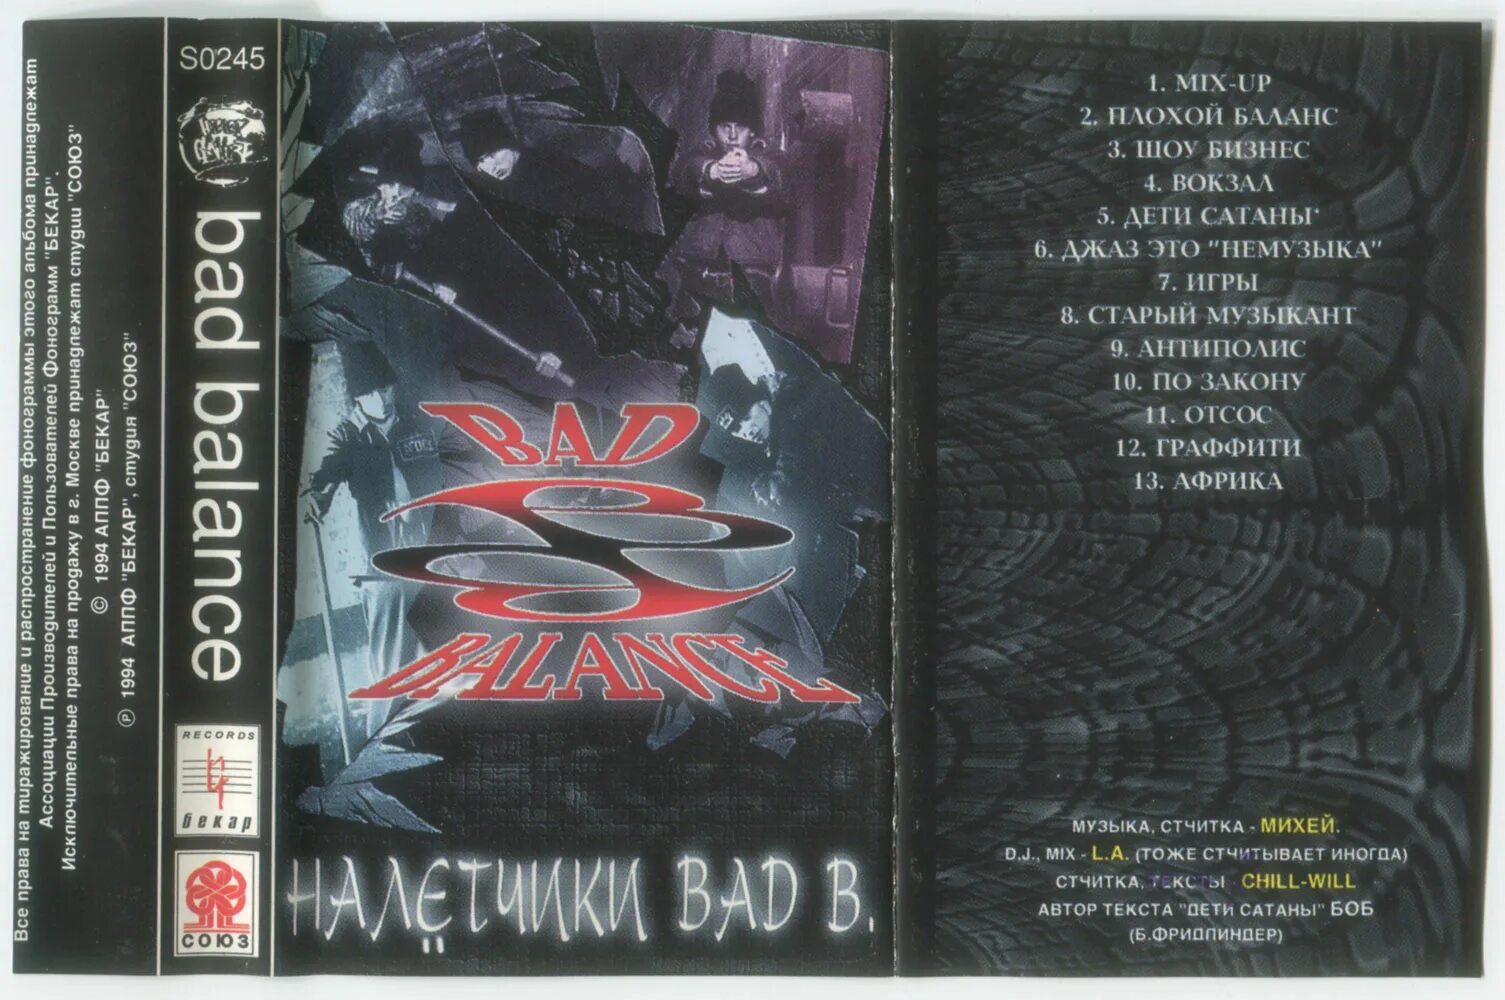 Текст песни сатана это она. 1994 Налётчики Bad b. Альбом Bad Balance 2021. Bad Balance налетчики. Bad Balance налетчики 1994 год.